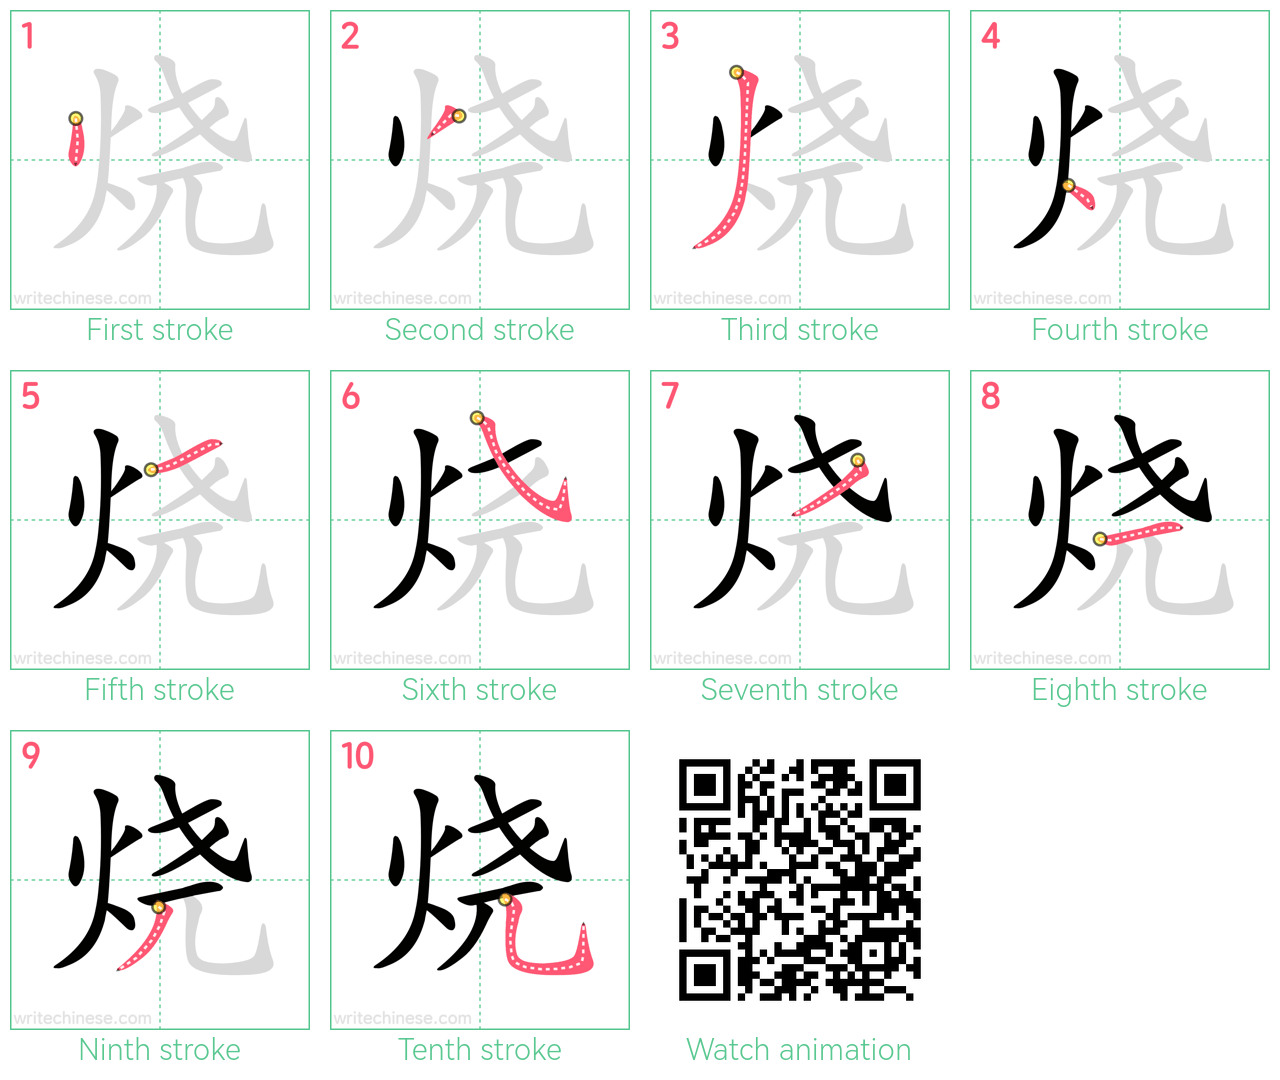 烧 step-by-step stroke order diagrams